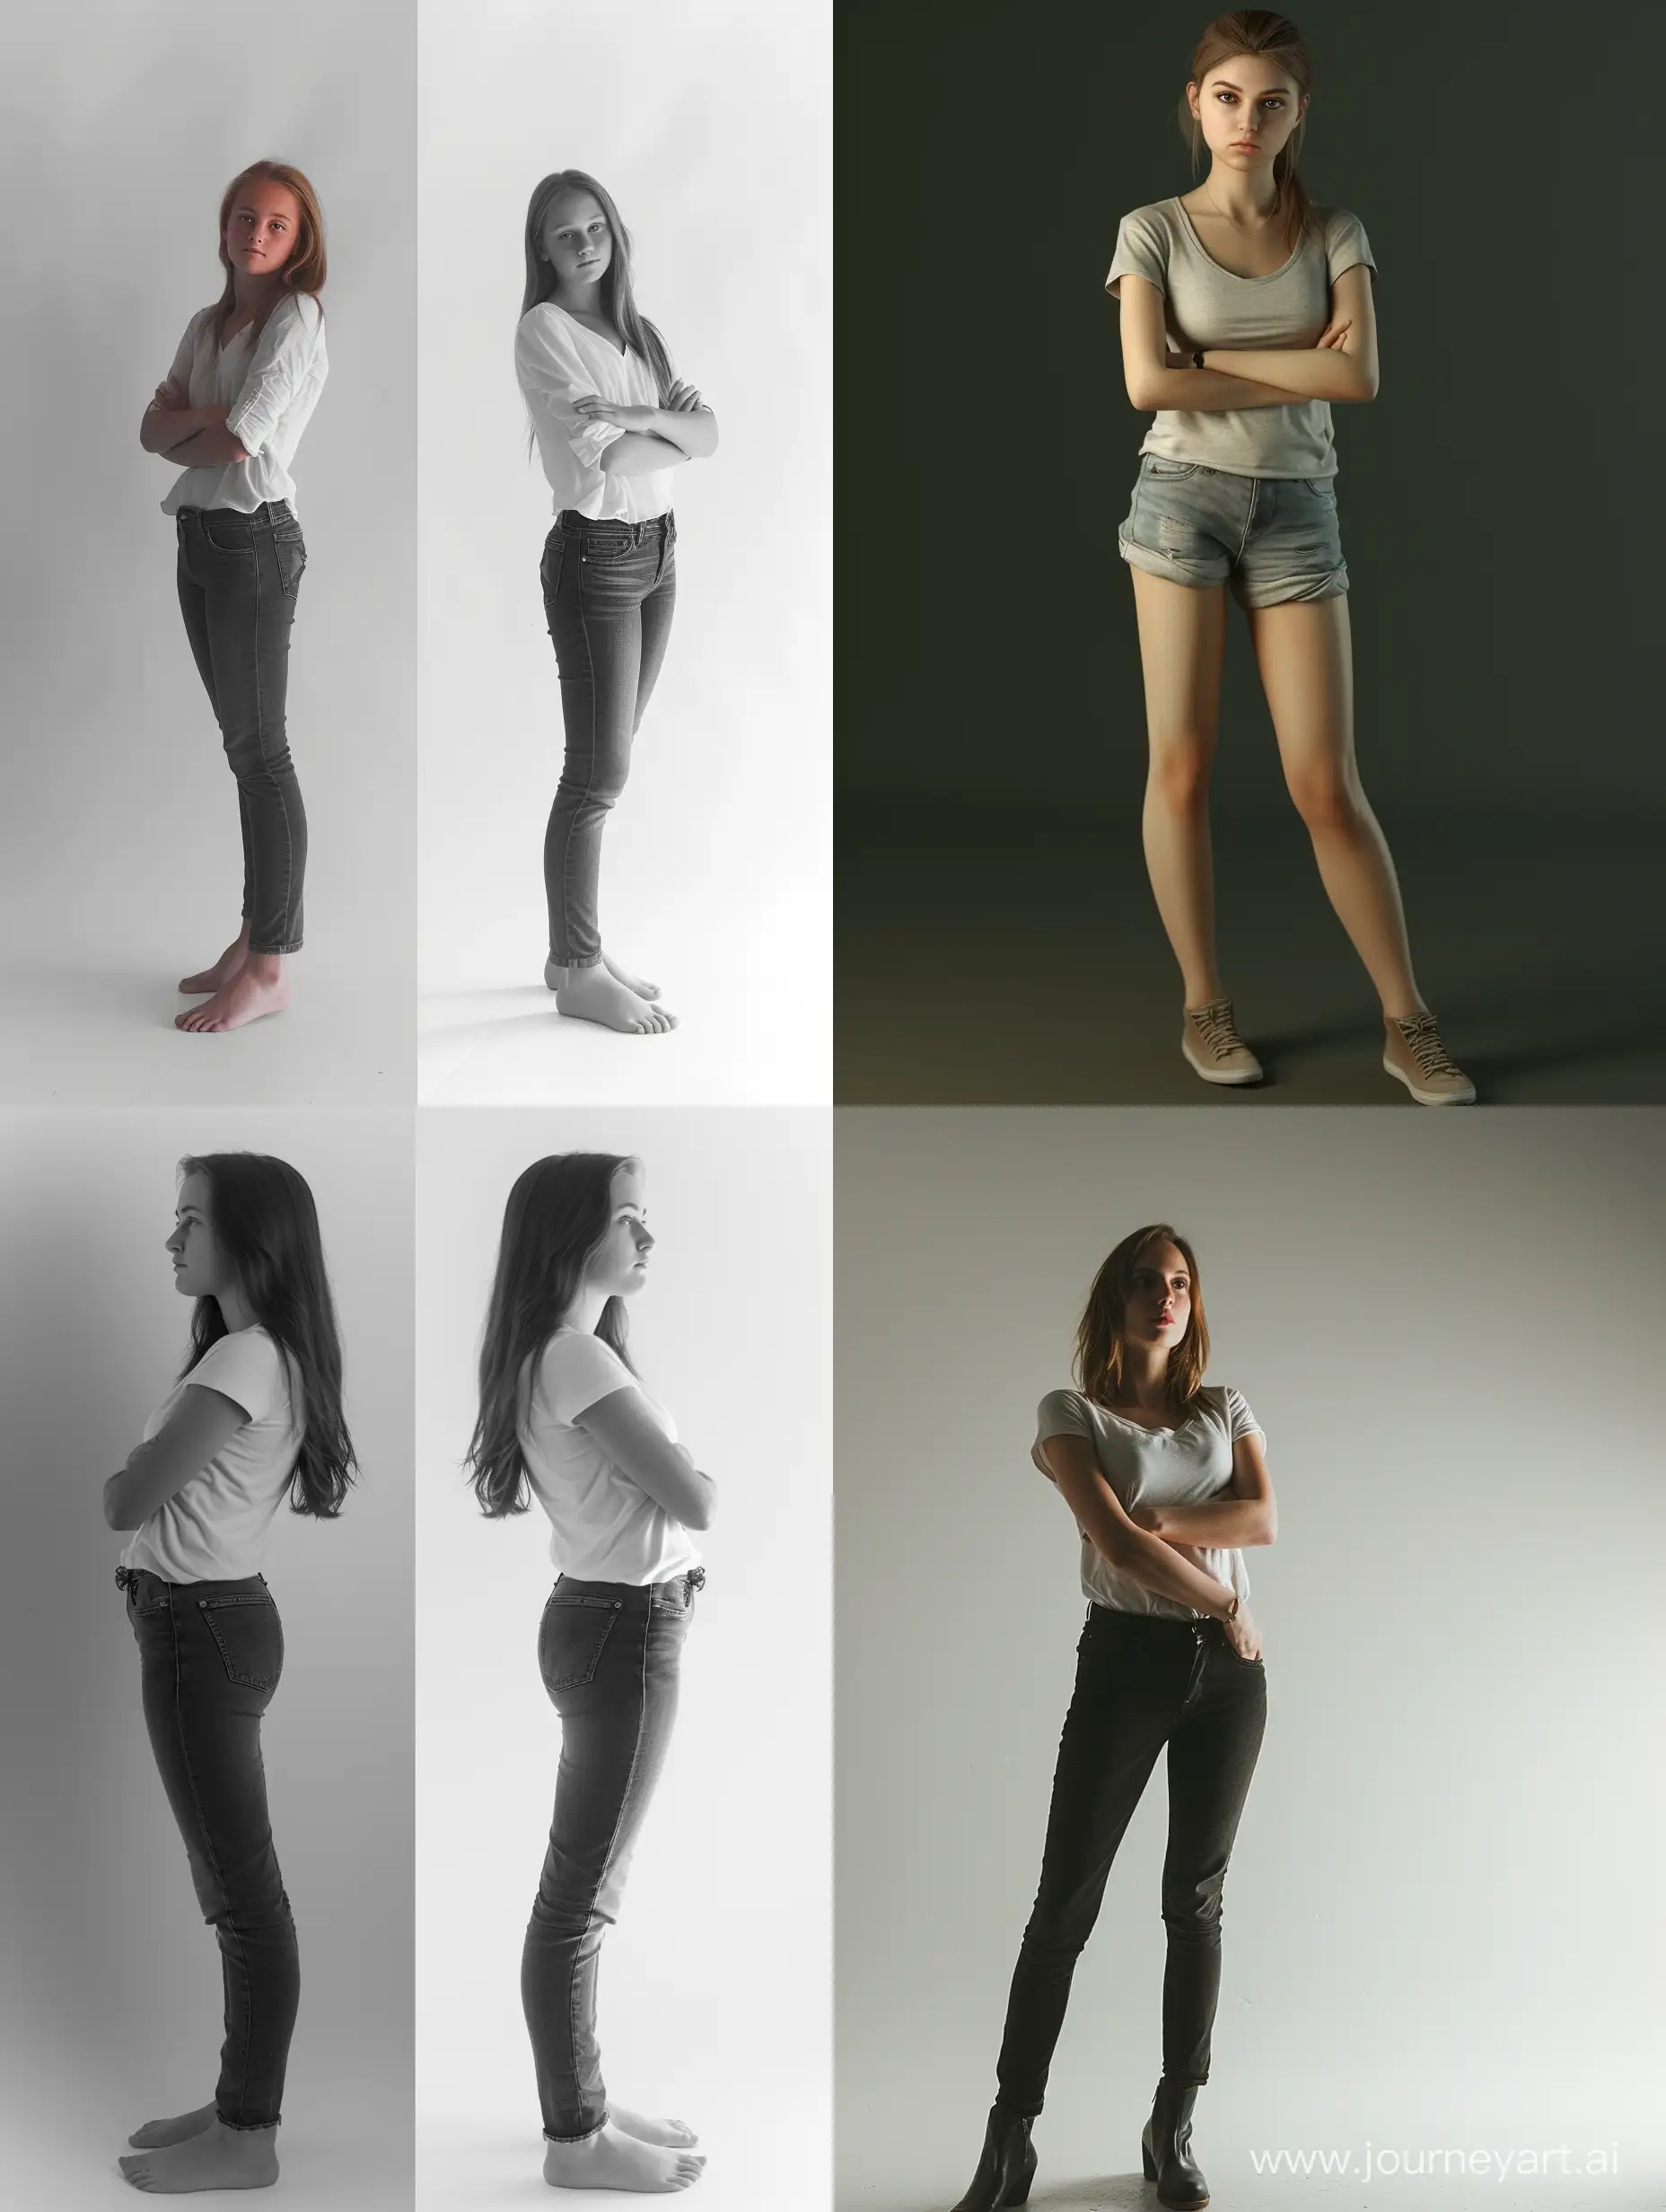 Примеры позирования для фото девушки стоя, один вариант как правильно позировать, другой вариант как неправильно 